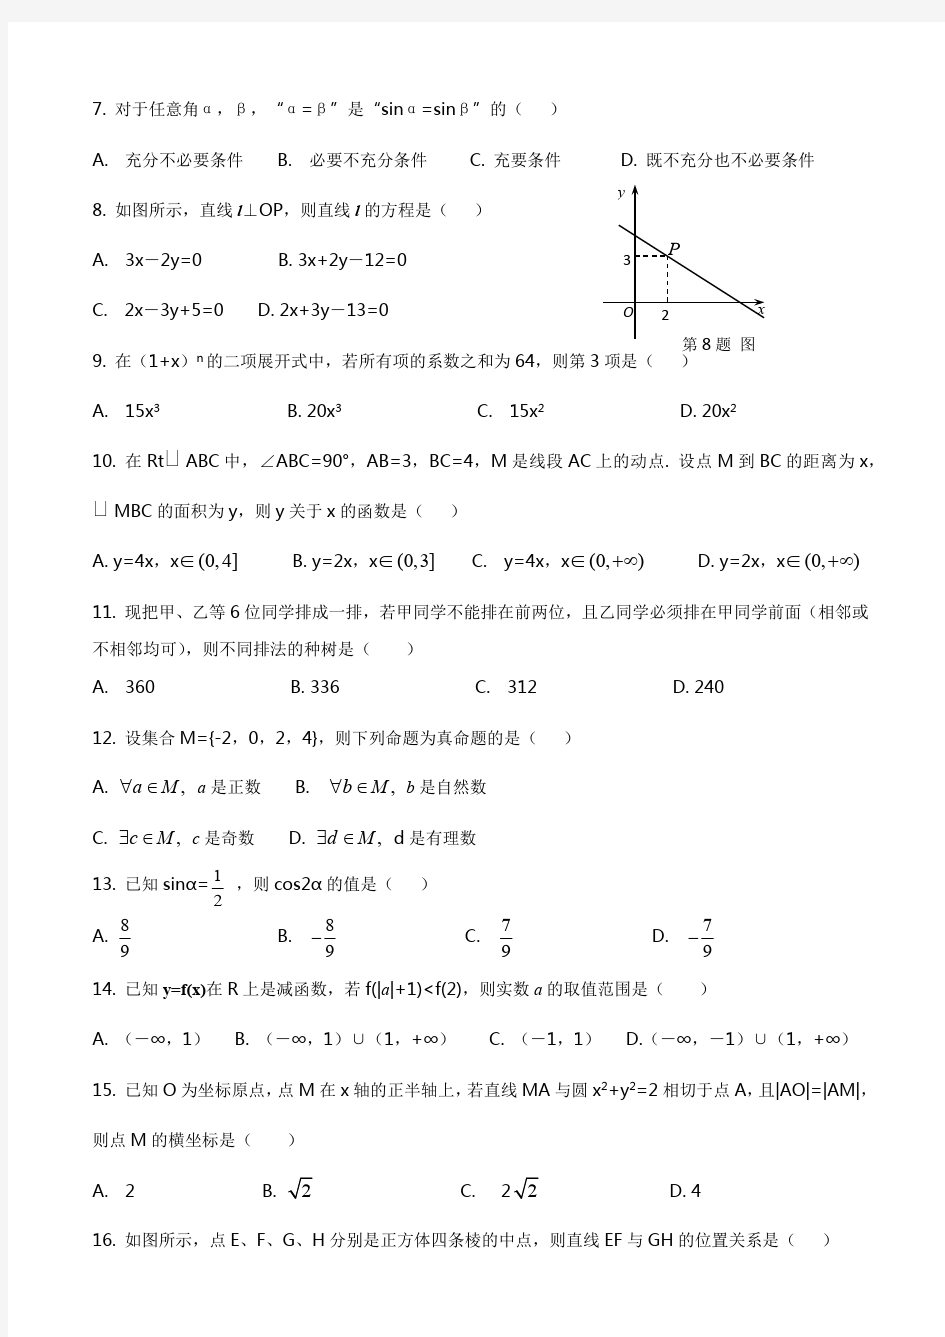 (完整版)2019年山东省春季高考数学试题及答案版(最新整理)